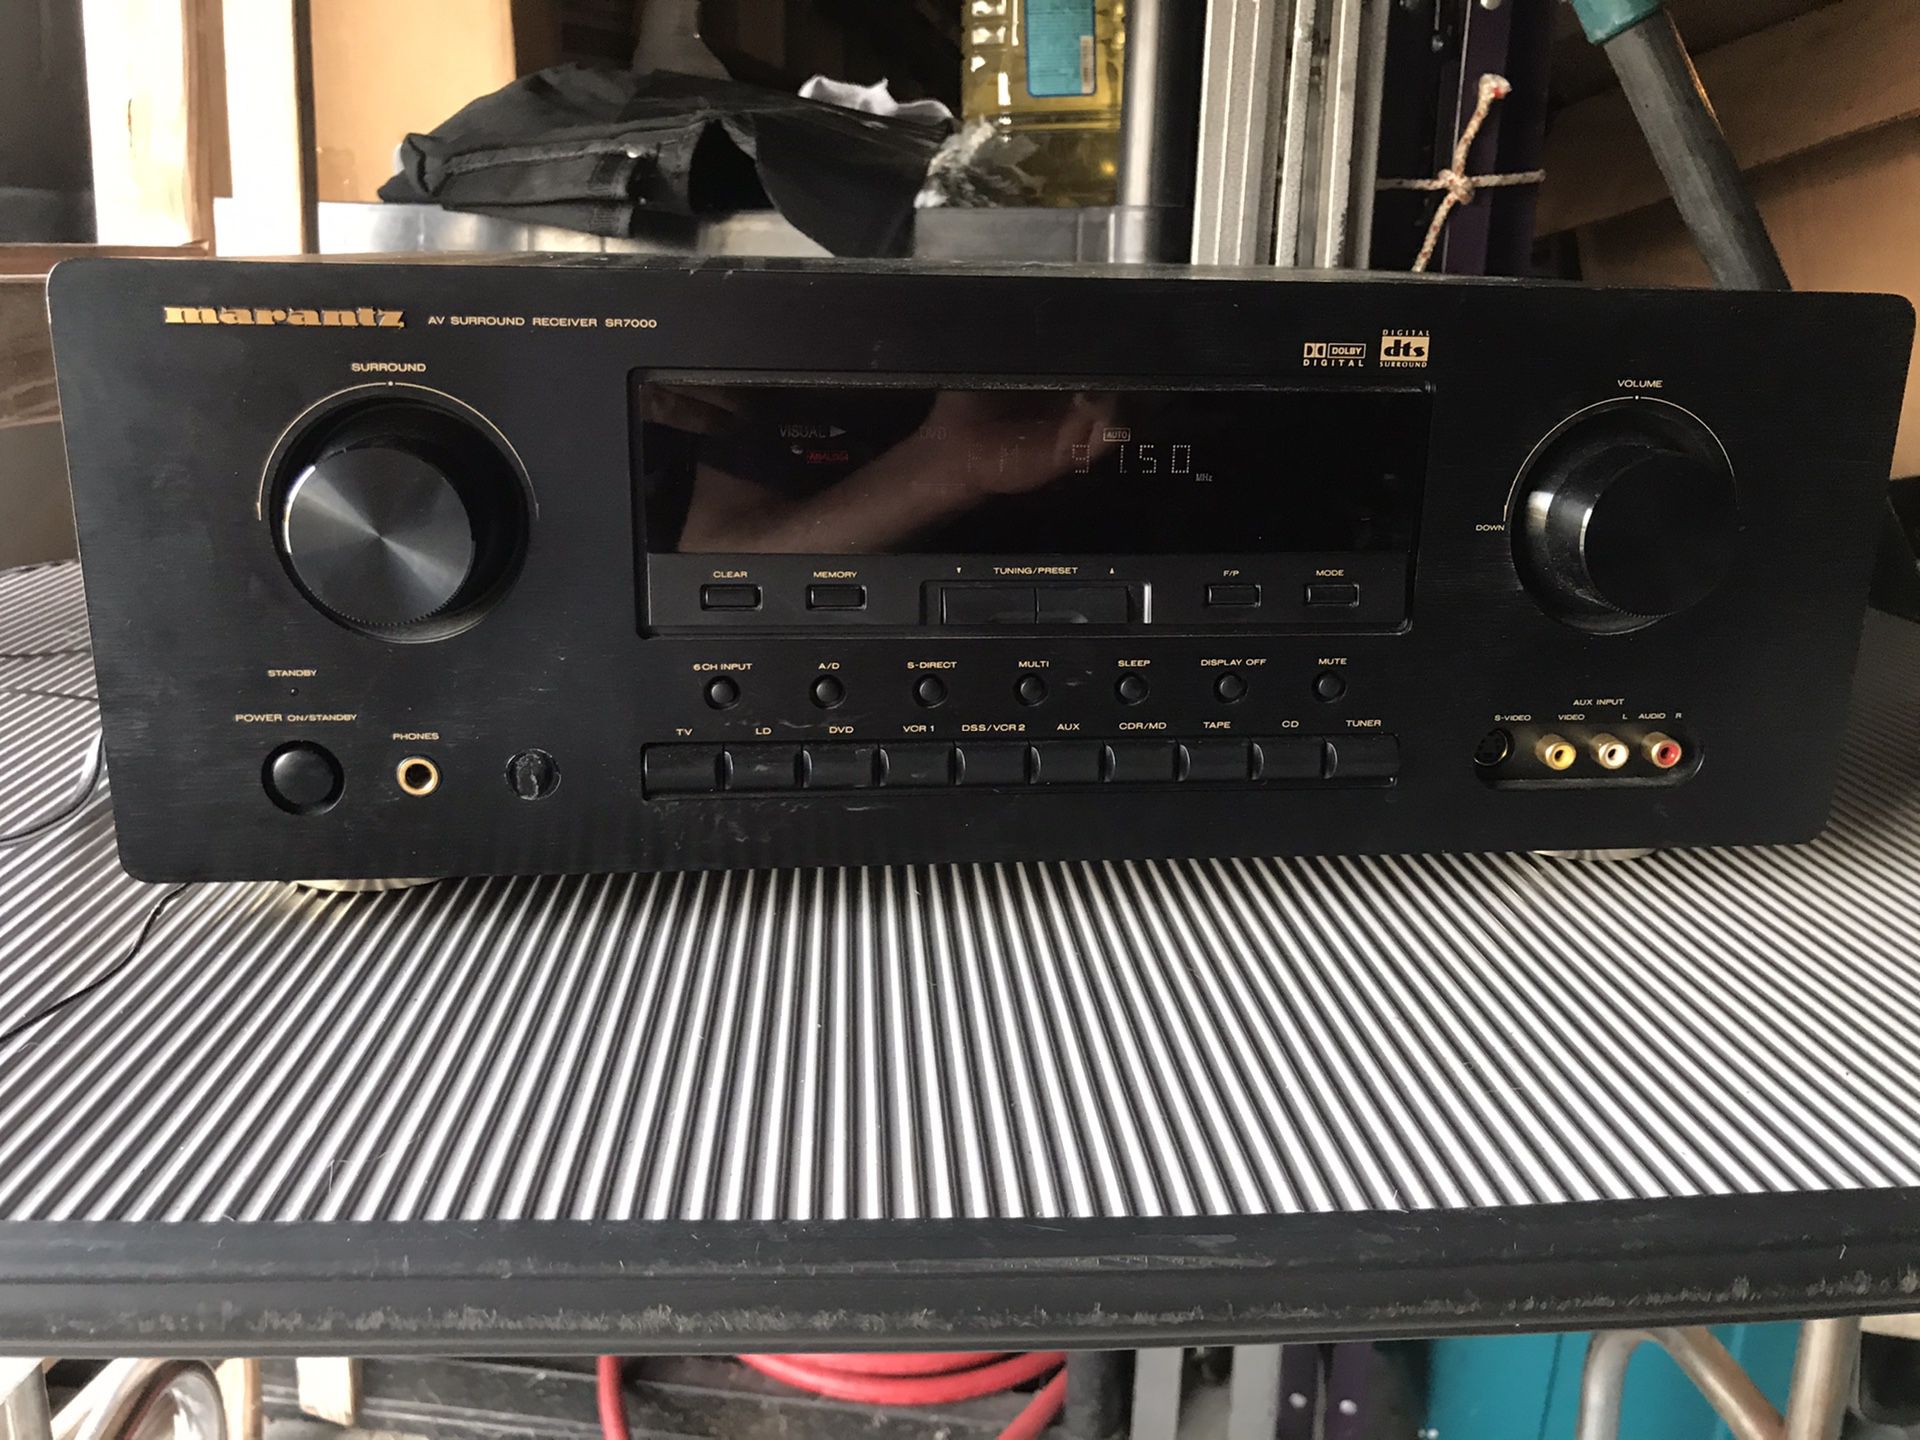 Marantz surround sound receiver